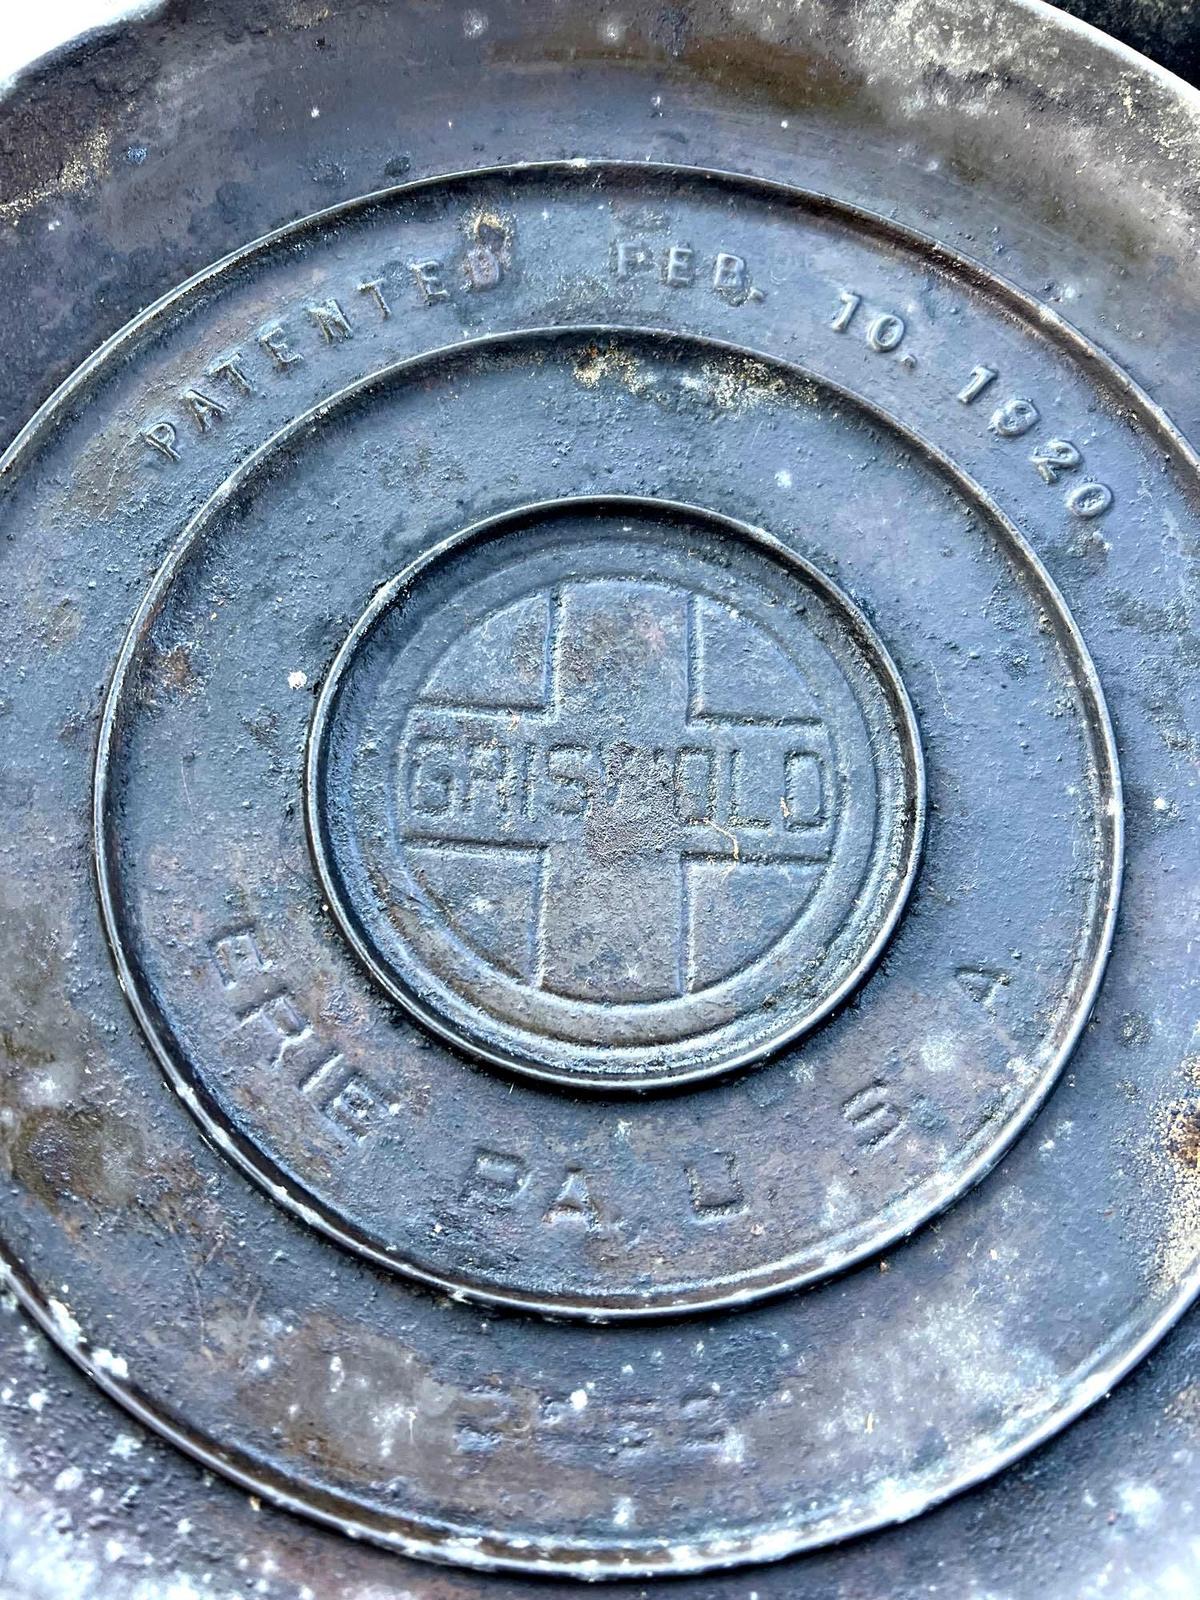 1920 Griswold cast No 9 Dutch oven